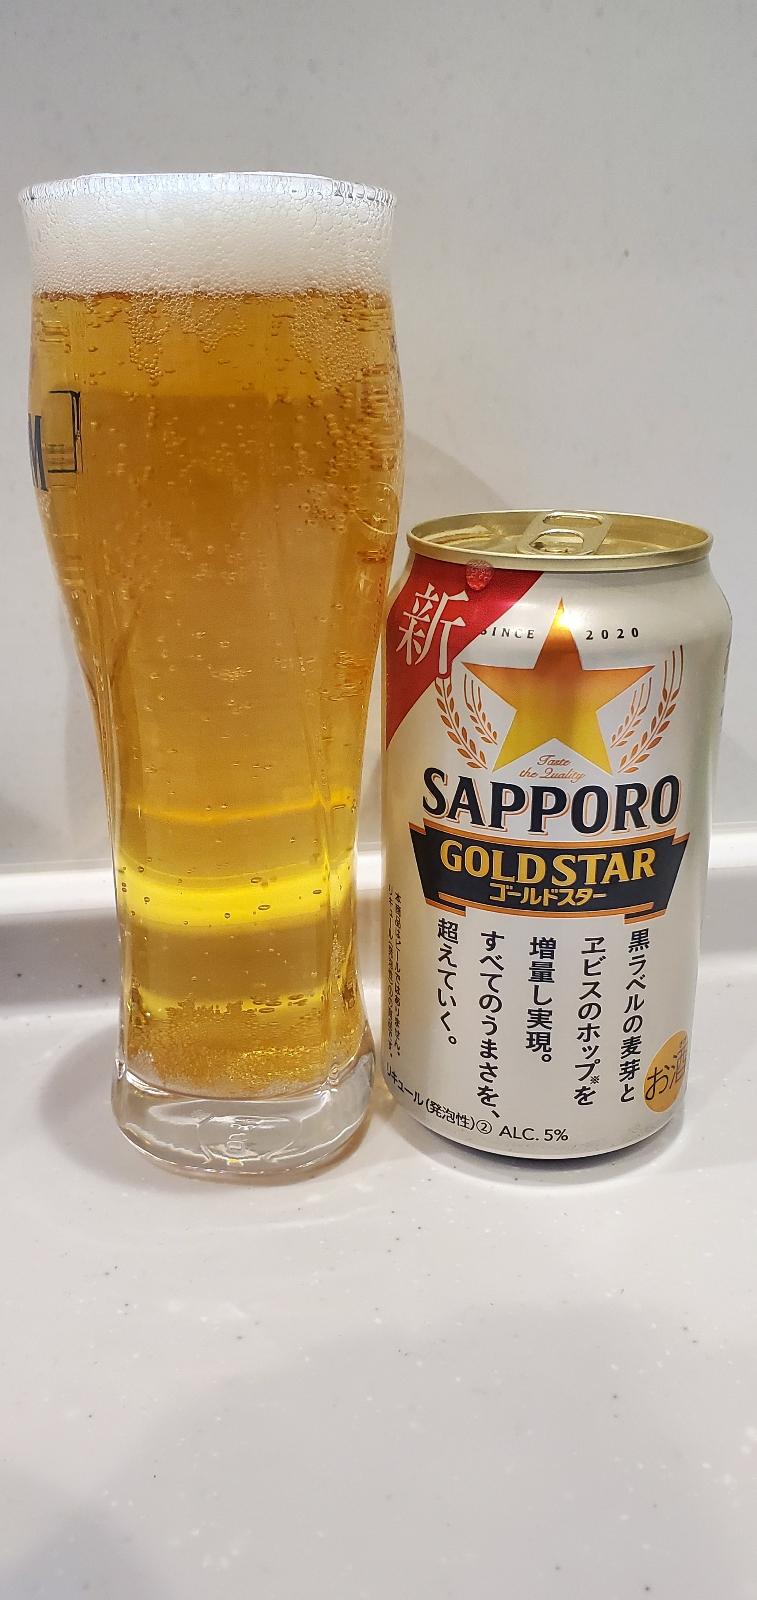 Sapporo Gold Star - Shin